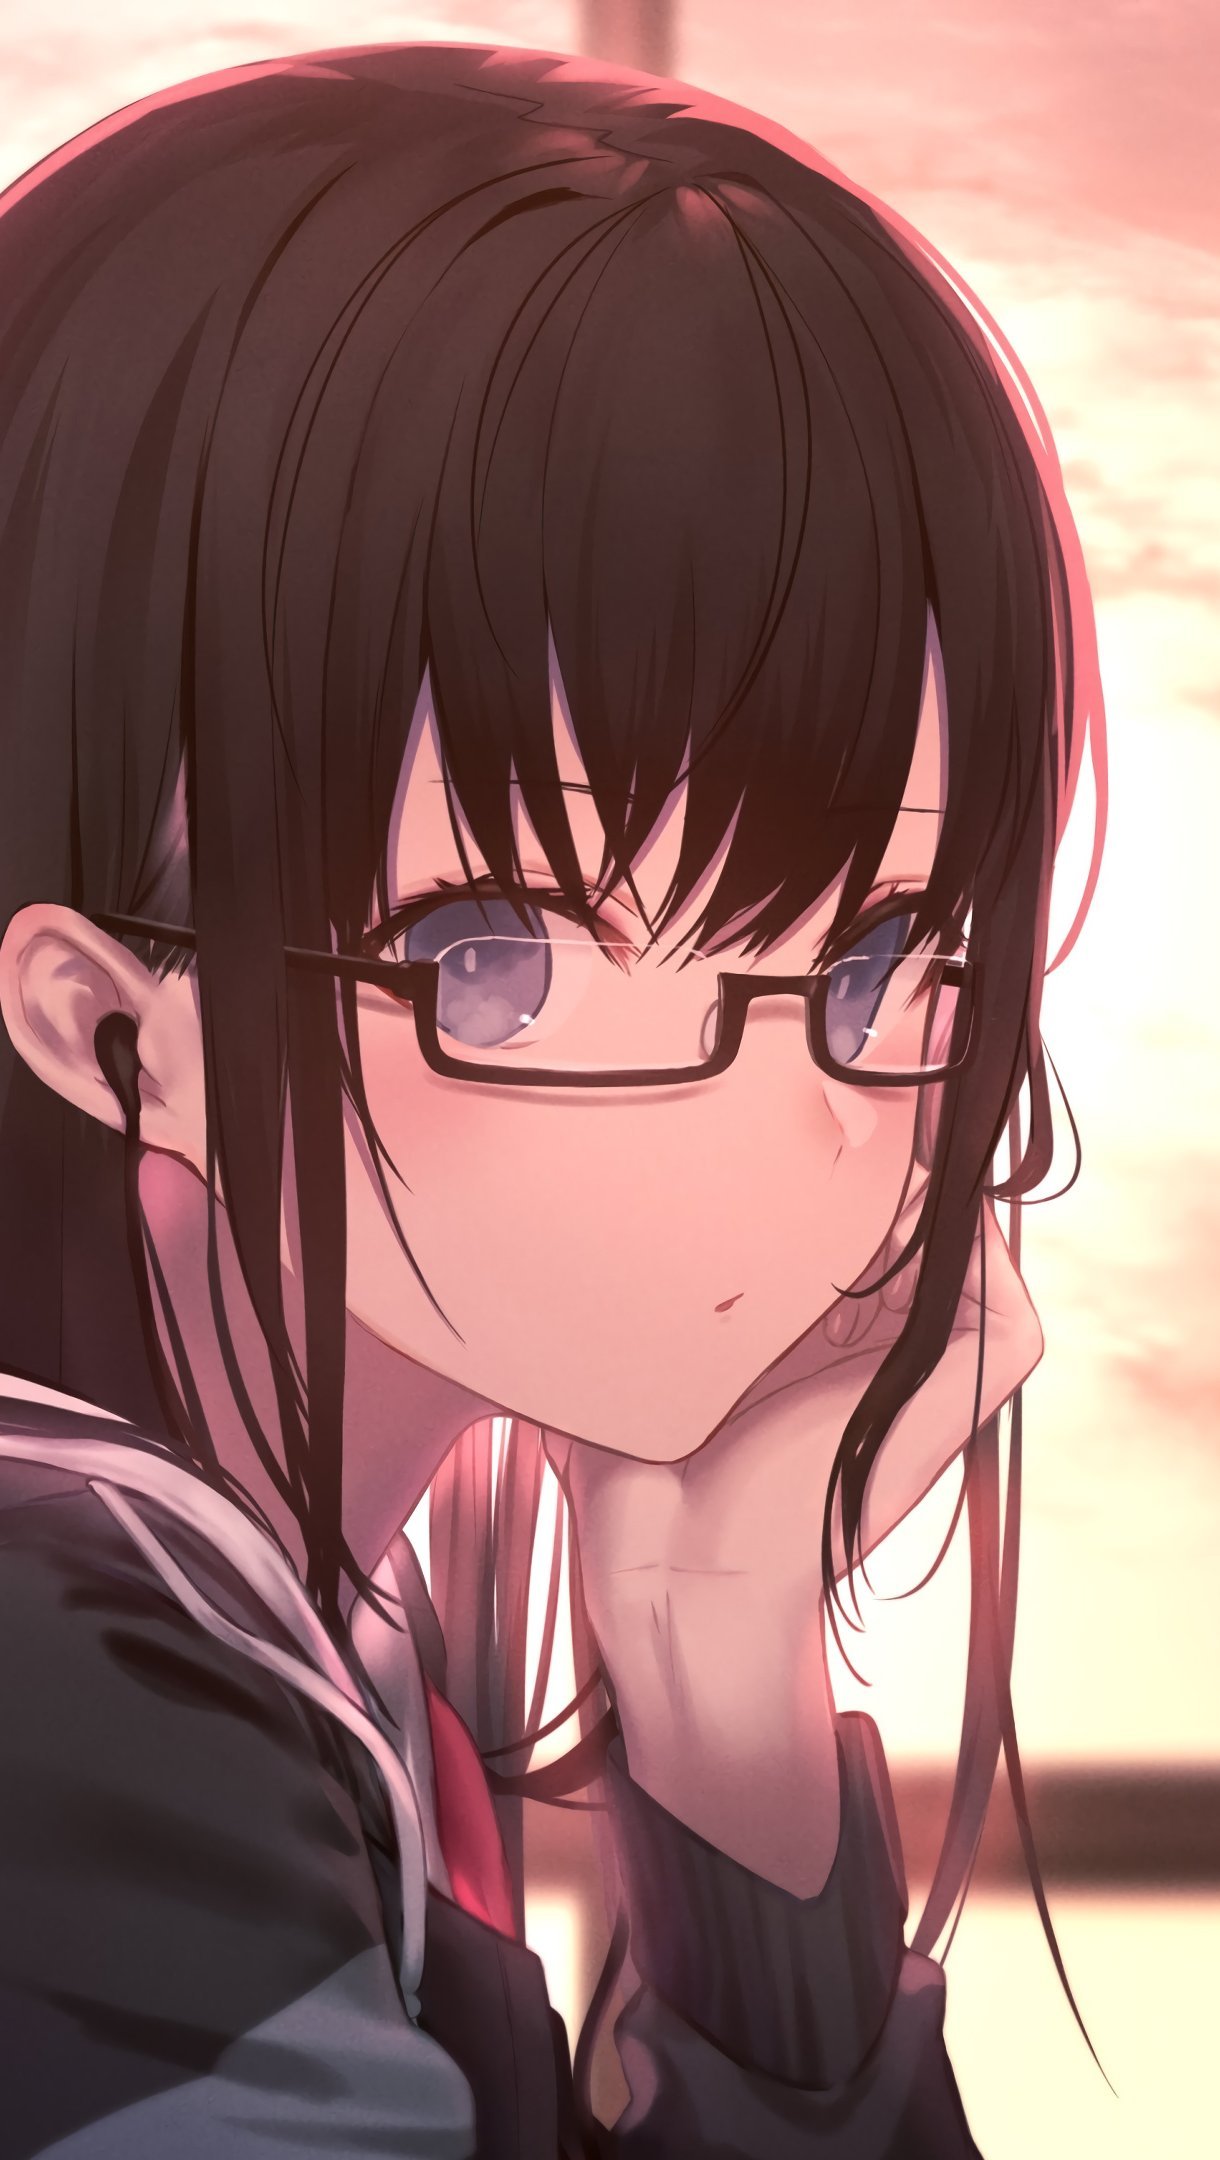 Anime Girl Student - anime girl